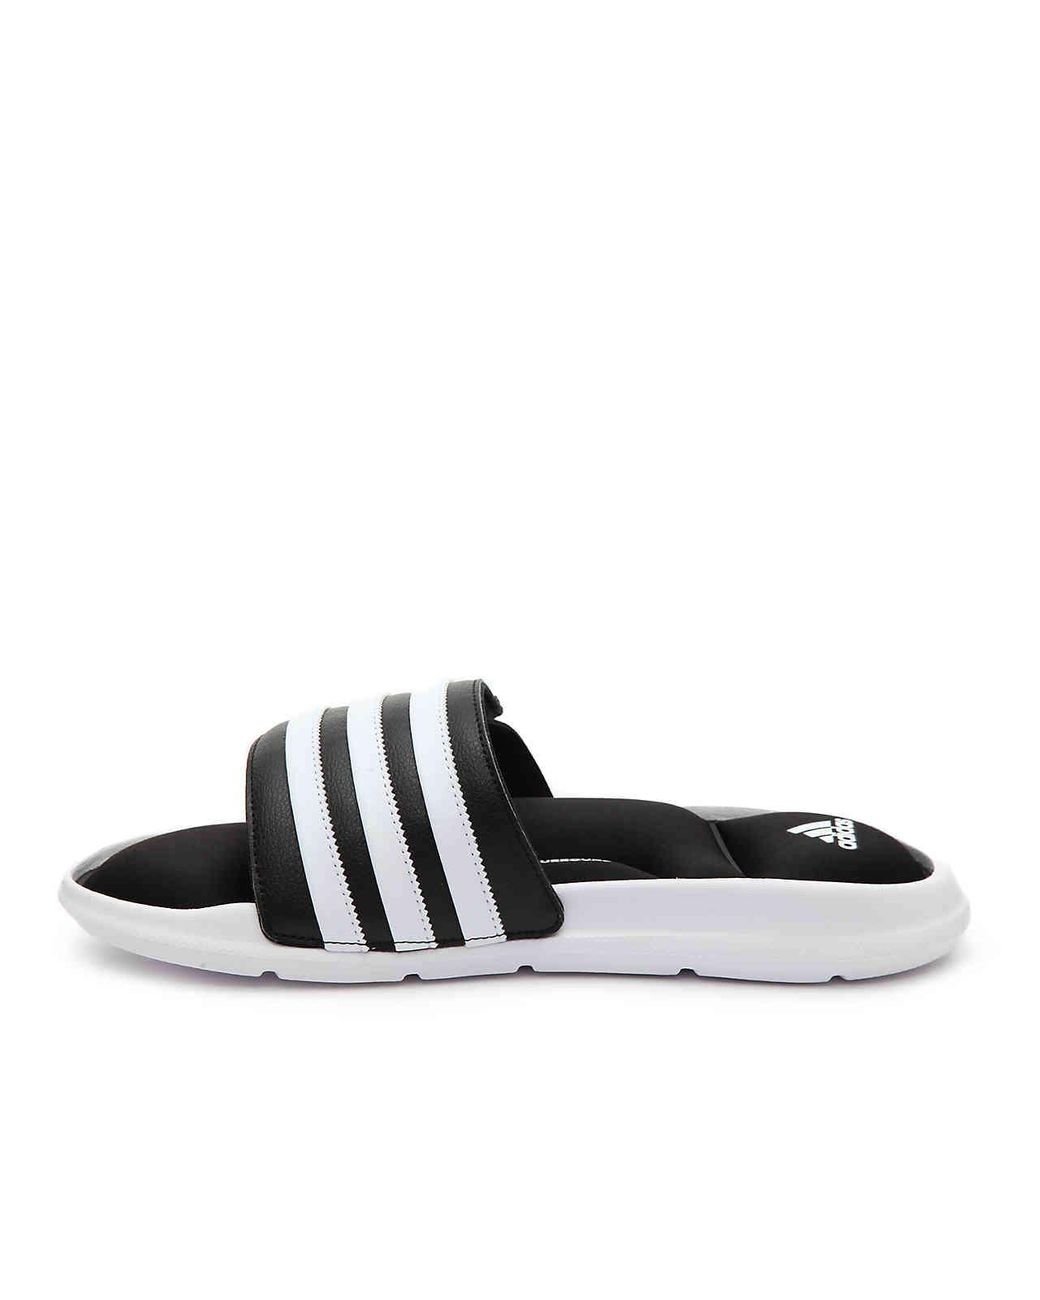 adidas Synthetic Superstar 5g Slide Sandal in Black/White (Black) for Men |  Lyst